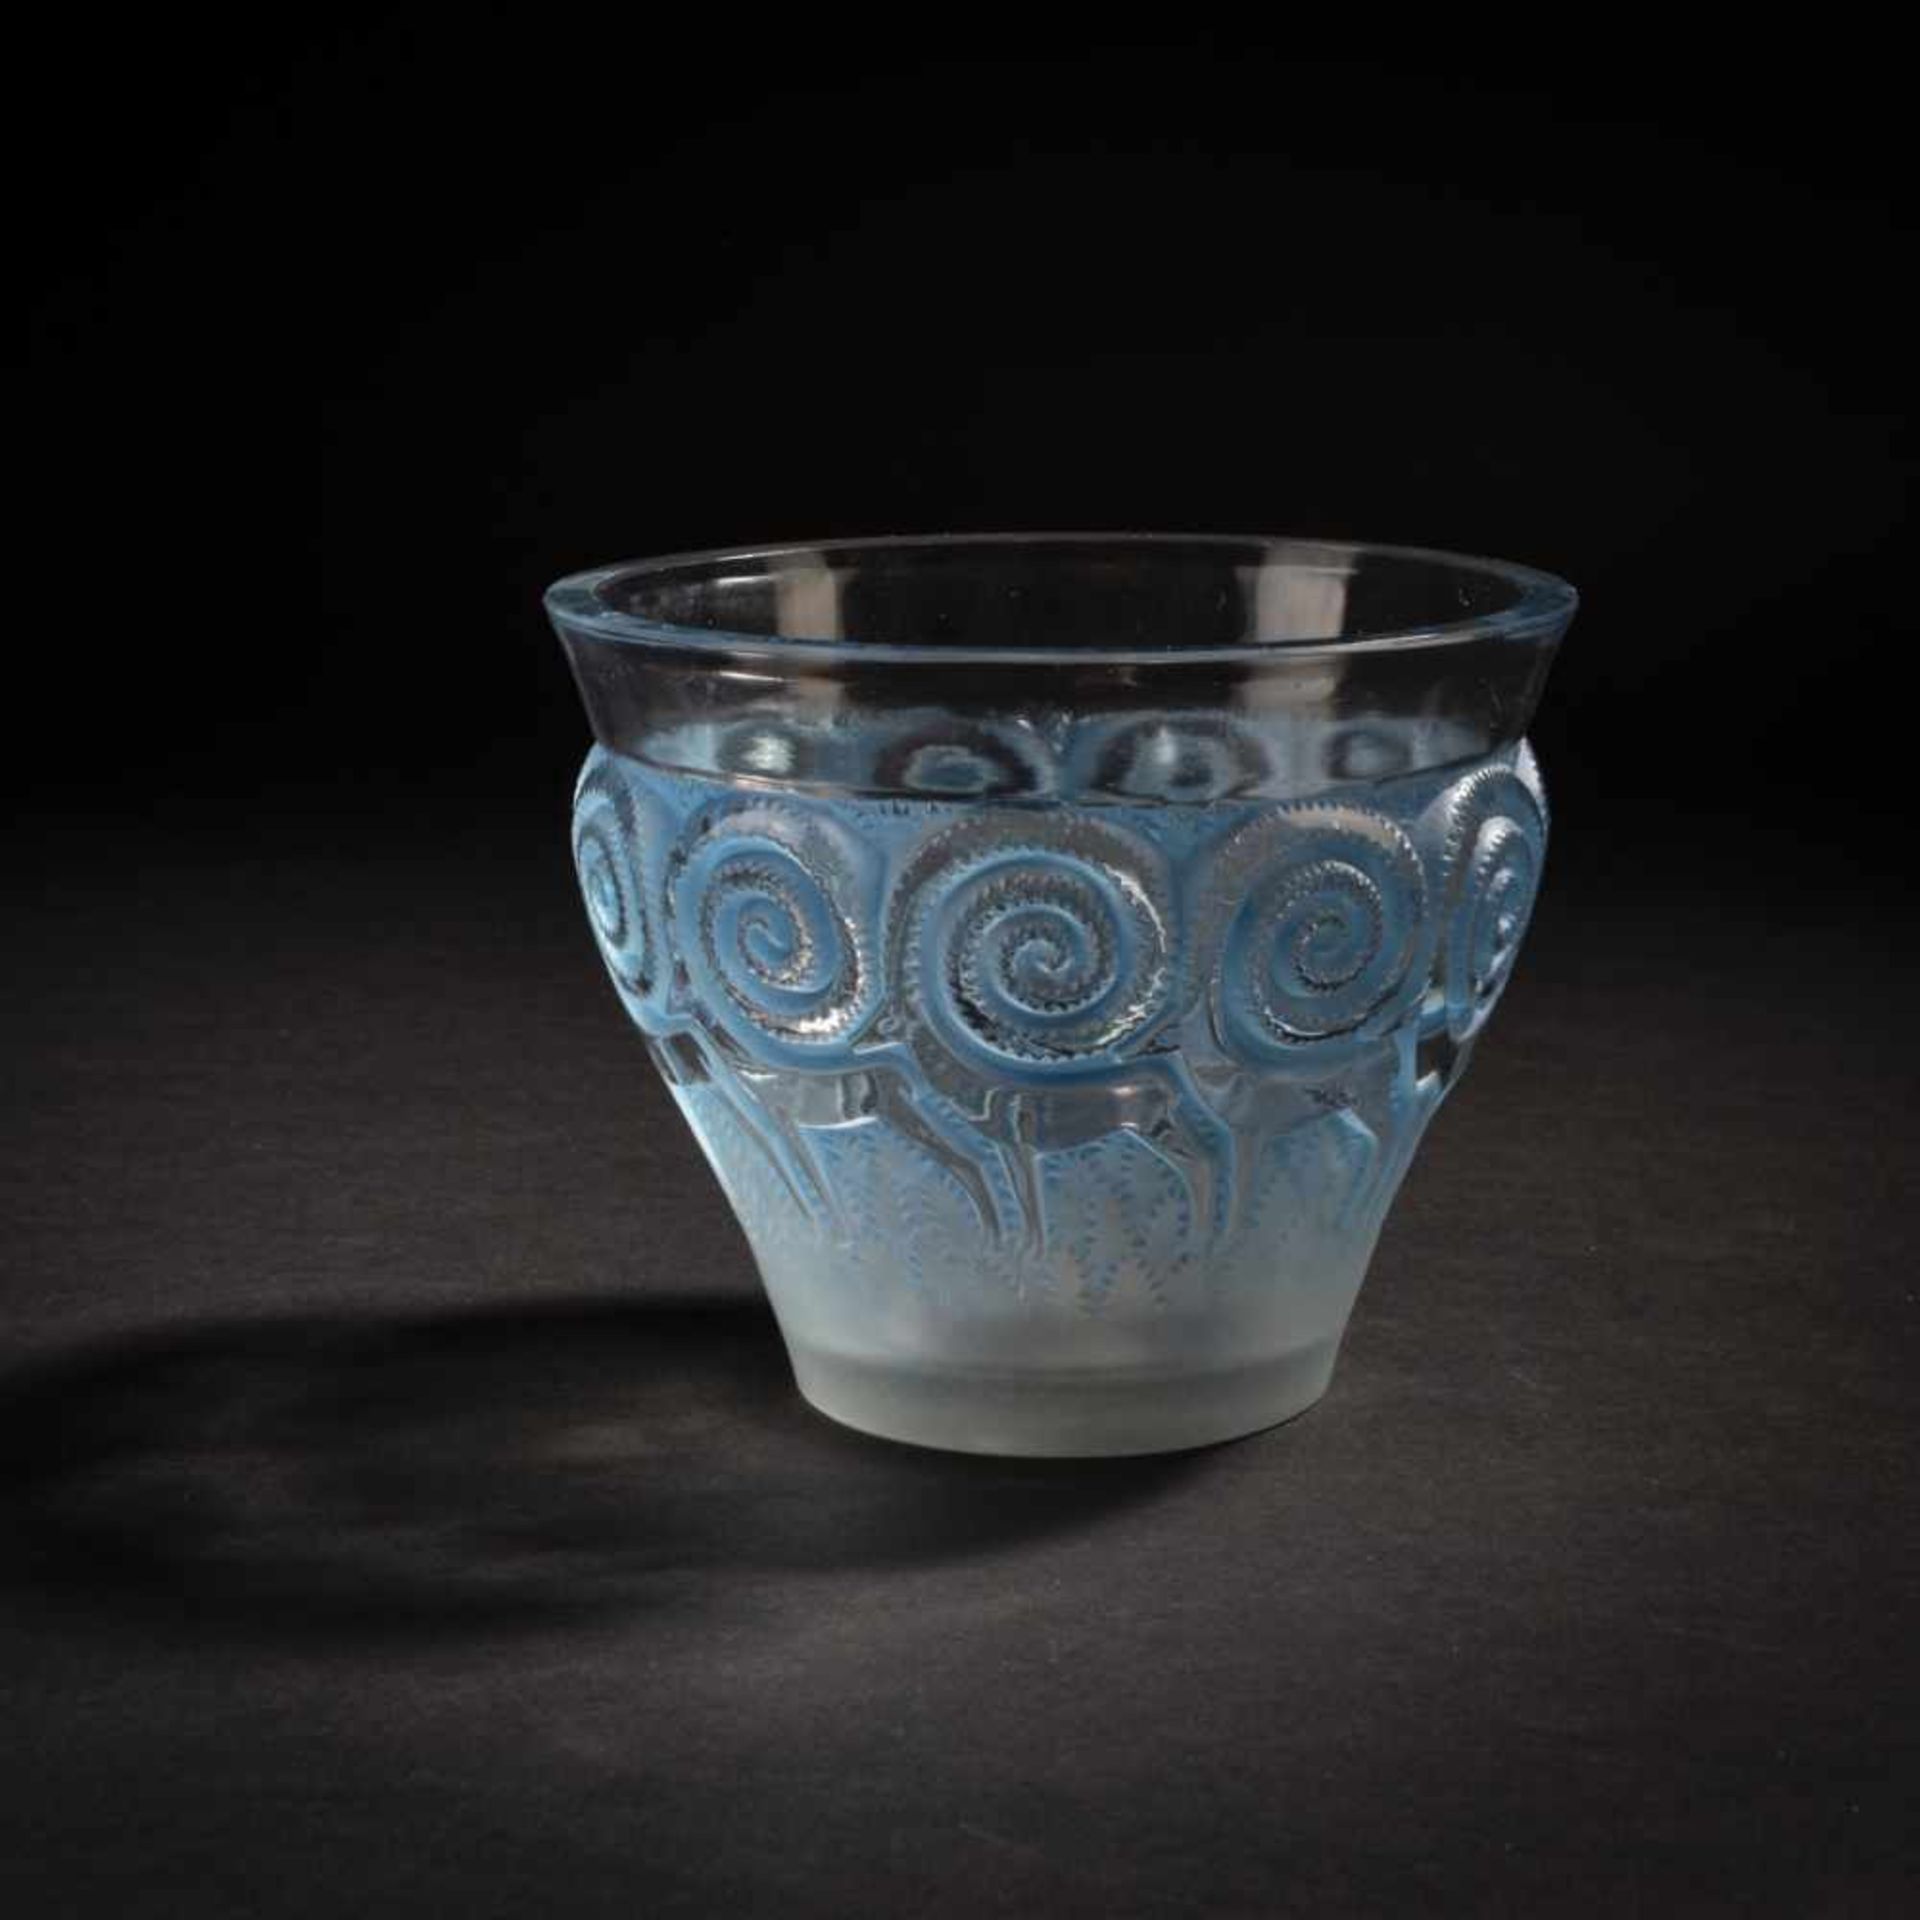 René Lalique, 'Rennes' vase, 1933'Rennes' vase, 1933H. 12.5 cm. Clear, moulded glass, blue patina,